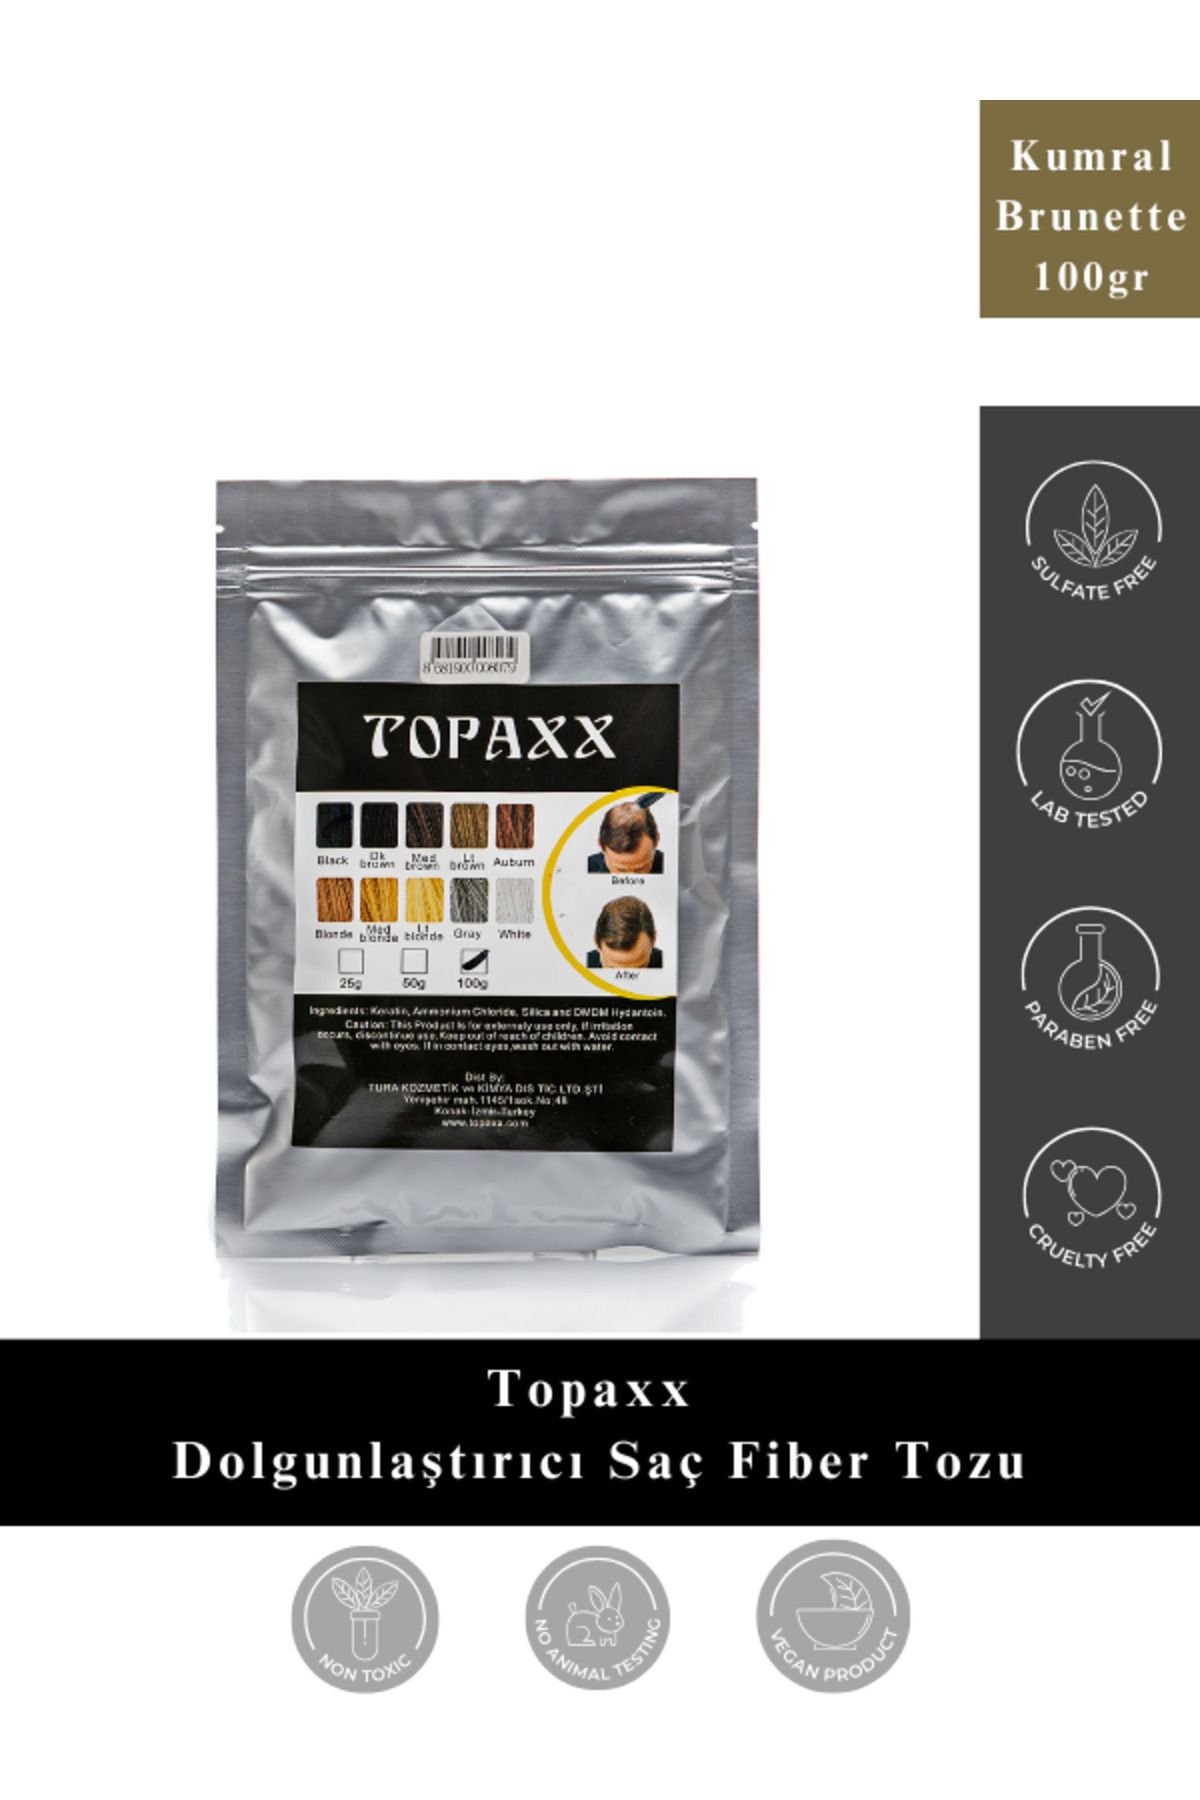 Topaxx Kumral/Brunette Kellik Kapatıcı Dolgunlaştırıcı Saç Fiber Tozu 100 Gr Ekonomik Boy